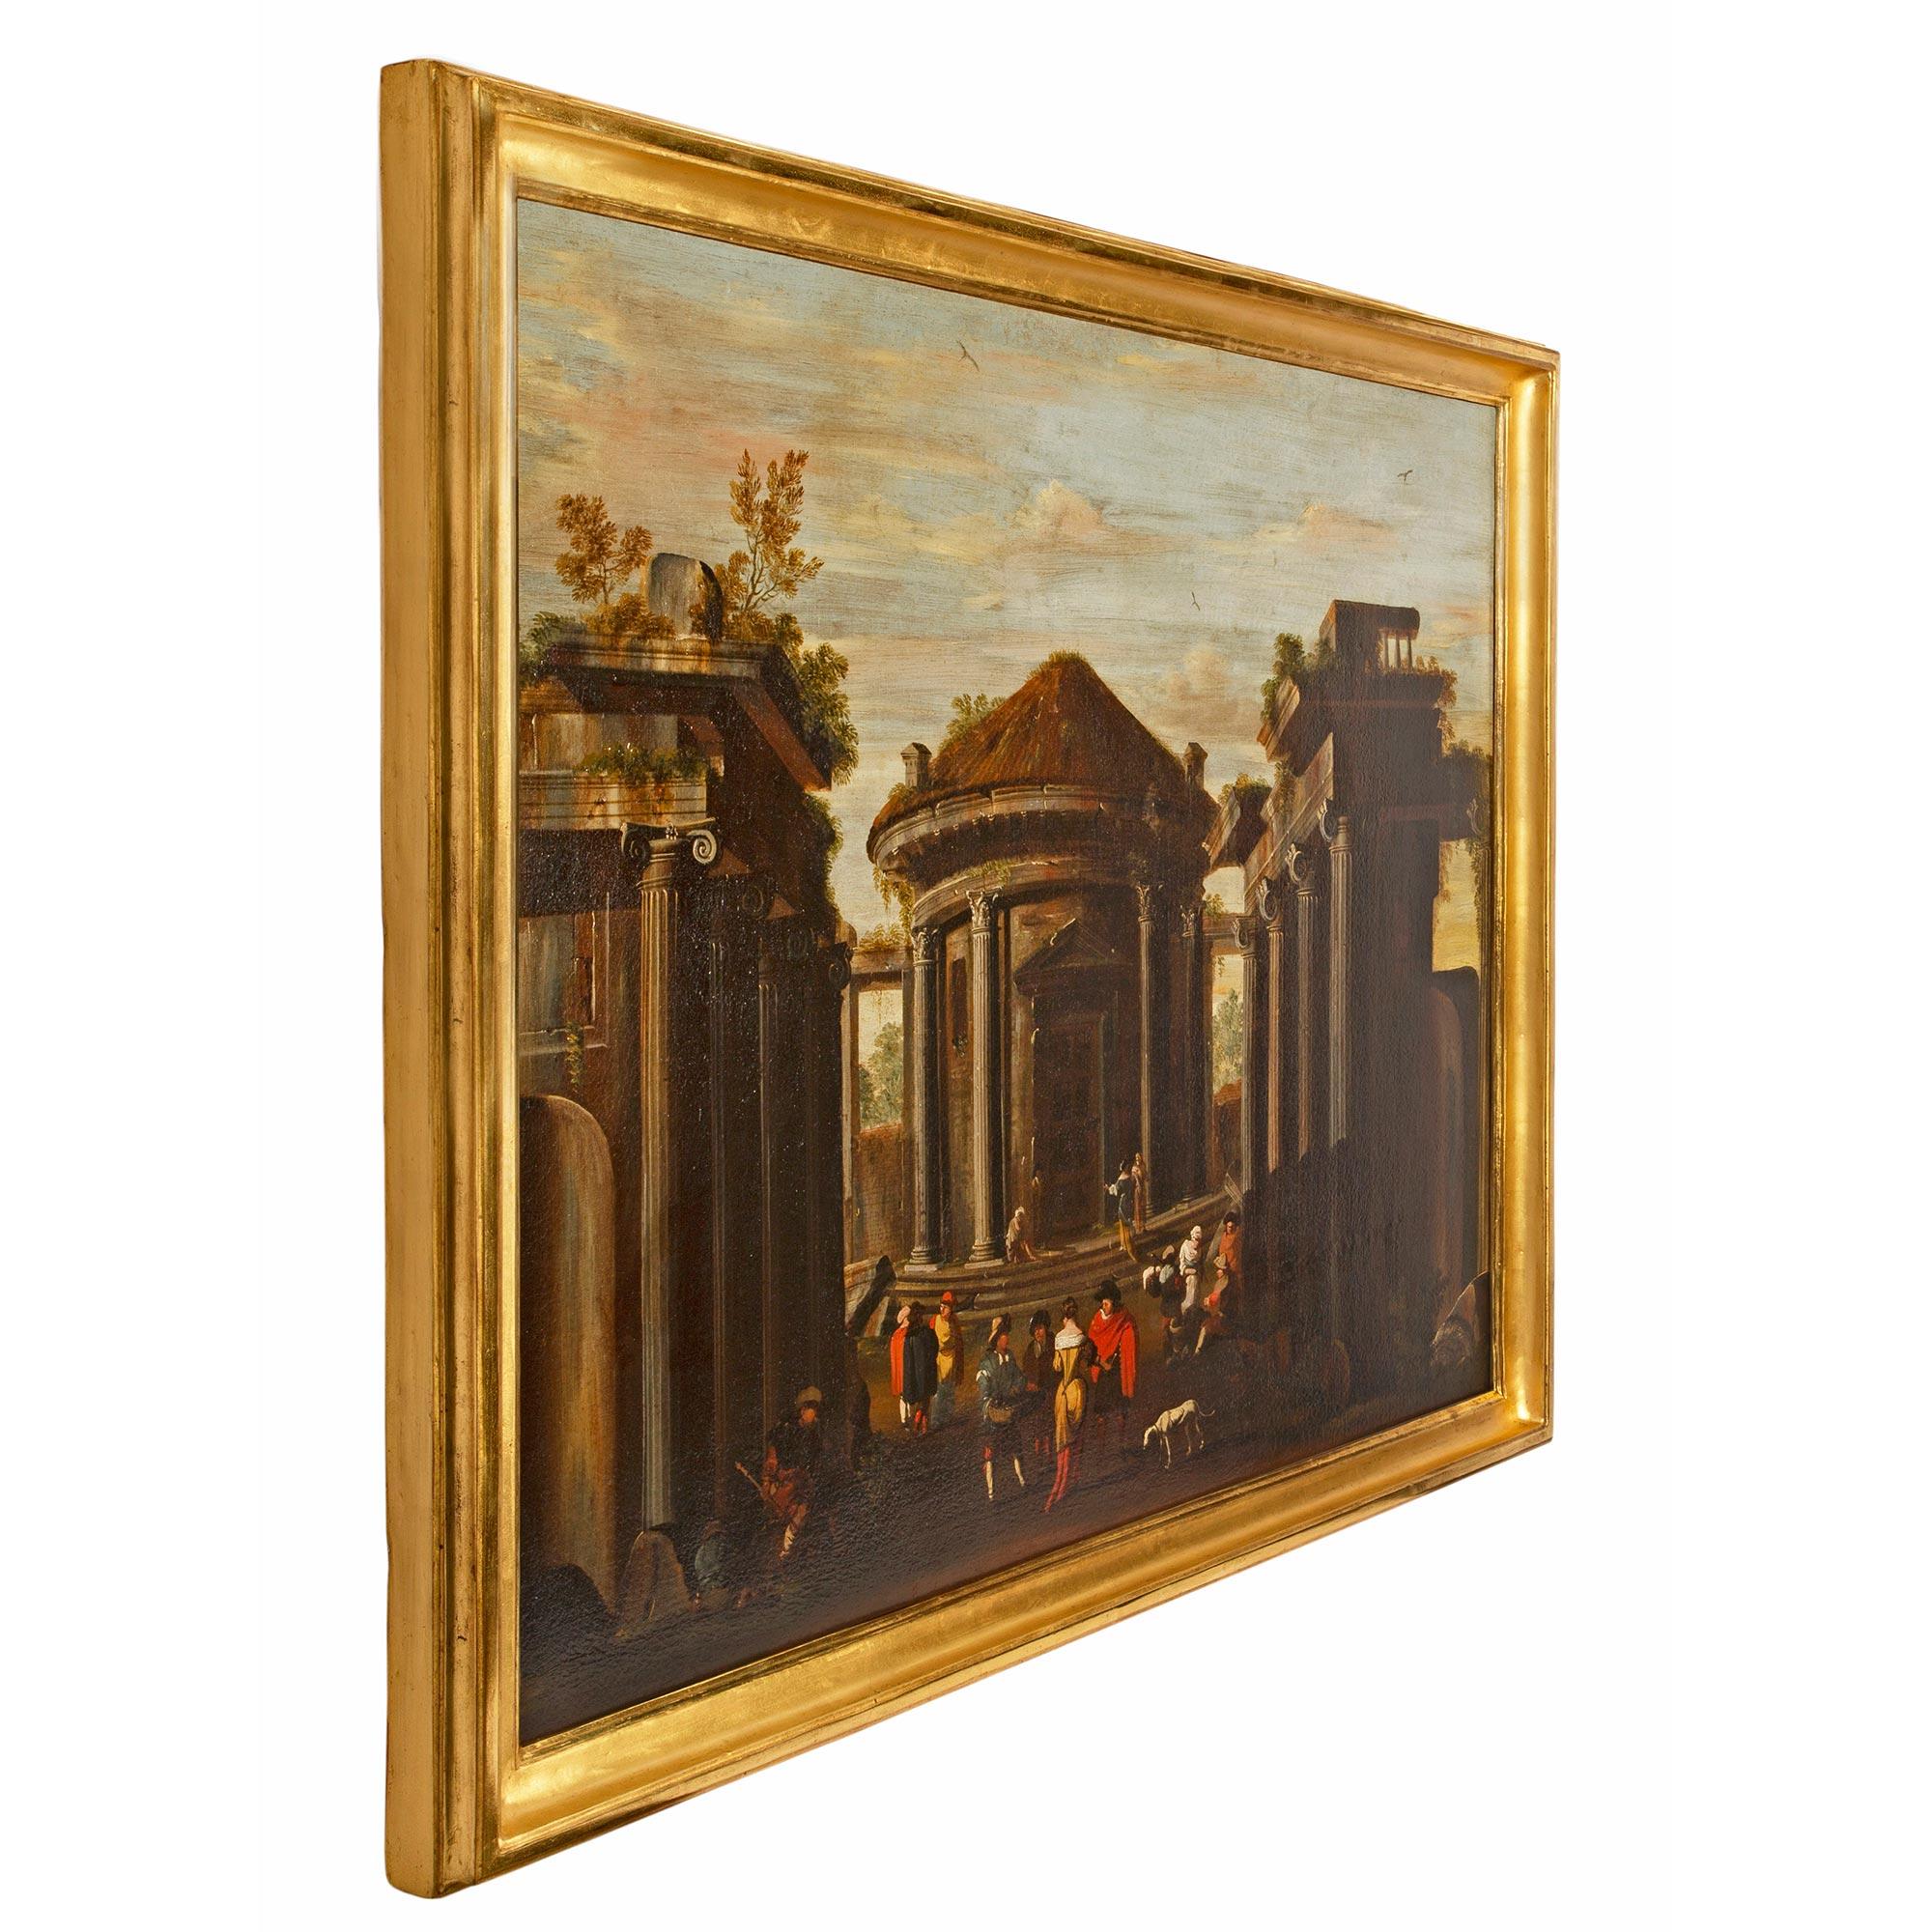 Ein sehr attraktives italienisches Öl auf Leinwand aus dem frühen 18. Jahrhundert mit einem architektonischen Thema. Das Gemälde zeigt einen zentralen runden Pavillon inmitten von Ruinen, die von vier ionischen Säulen akzentuiert werden. Im Zentrum